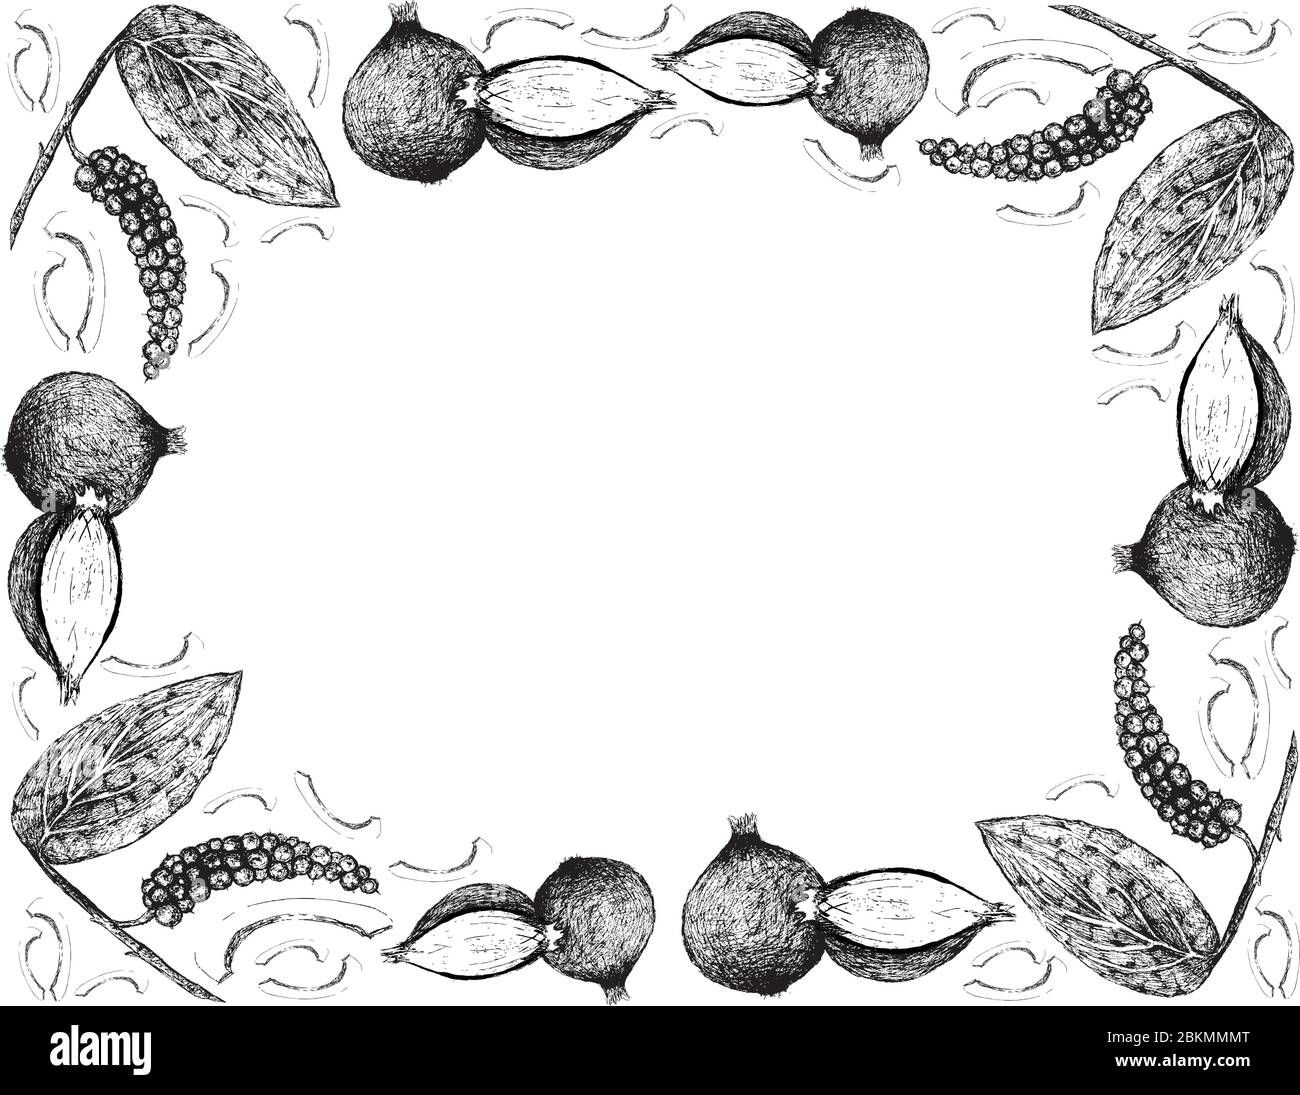 Piante di erbe, telaio di illustrazione di disegno disegnato a mano di pepe nero o Peppercorn con gli scalogni, gli cipolle spagnoli, o gli cipolle rossi, usati per il condimento Illustrazione Vettoriale